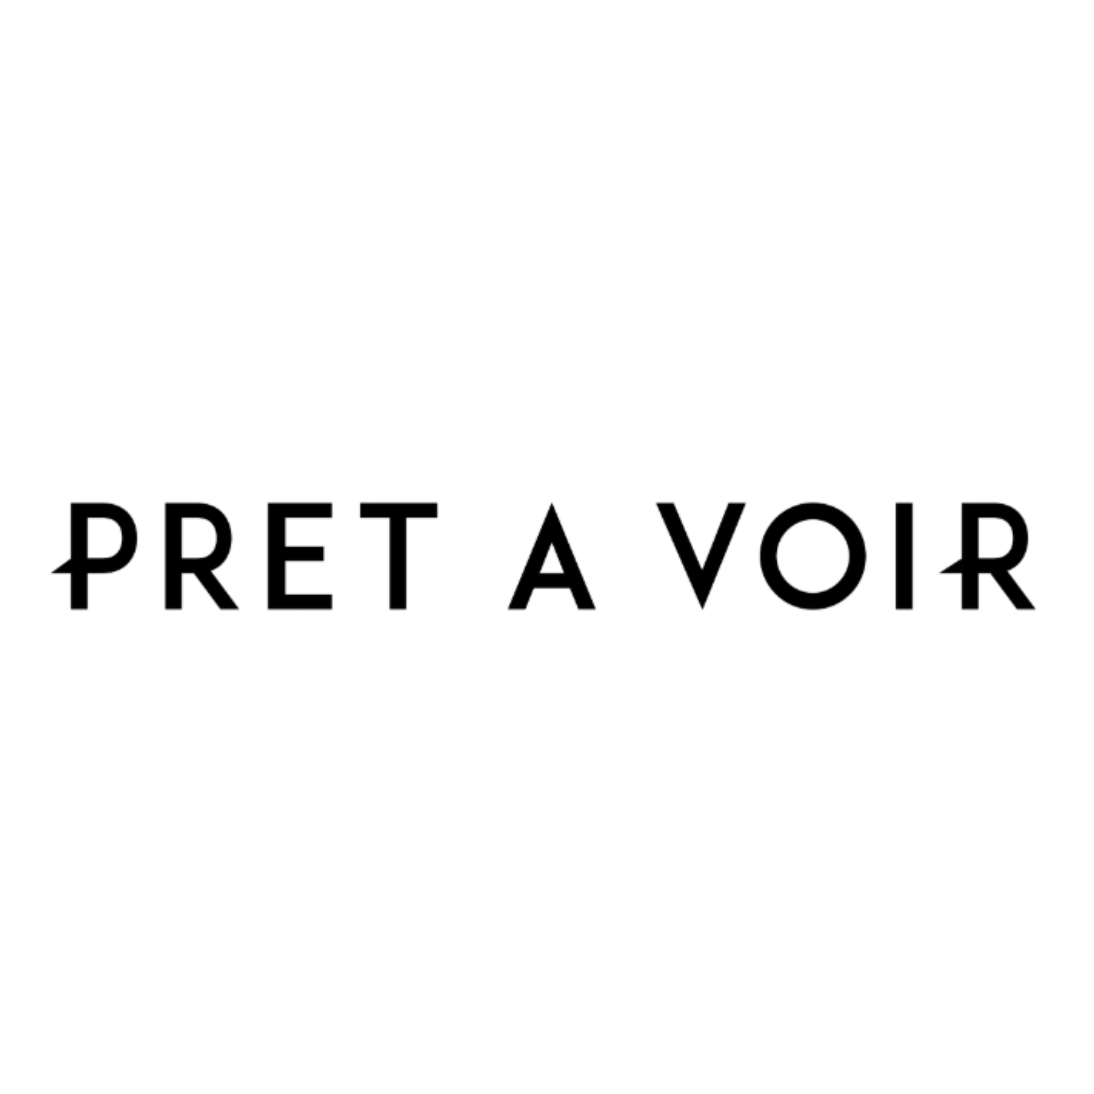 Company logo of Pretavoir